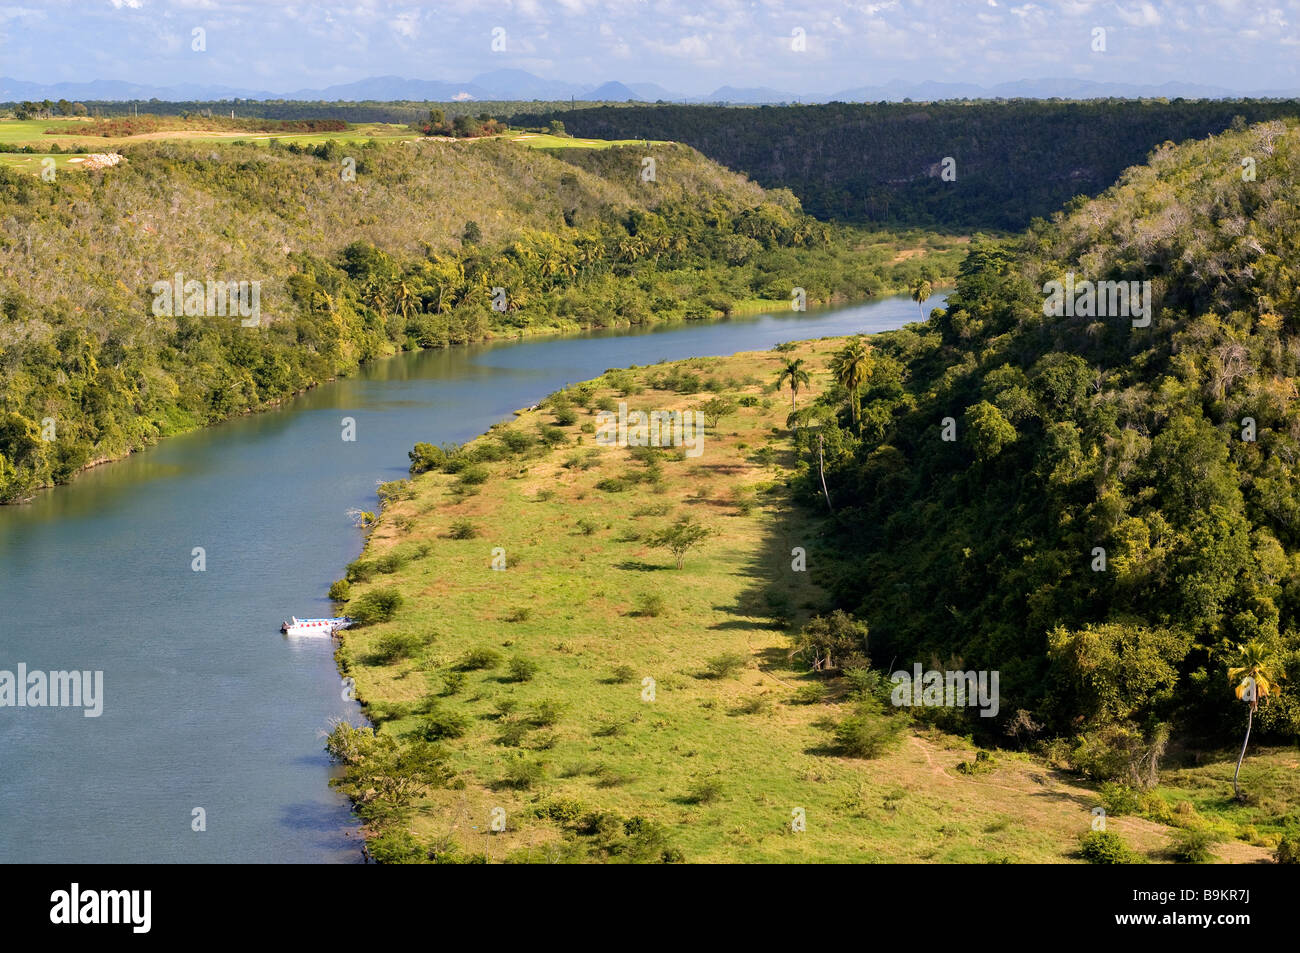 Dominican Republic, La Romana province, Altos de Chavon, Rio Chavon River Stock Photo